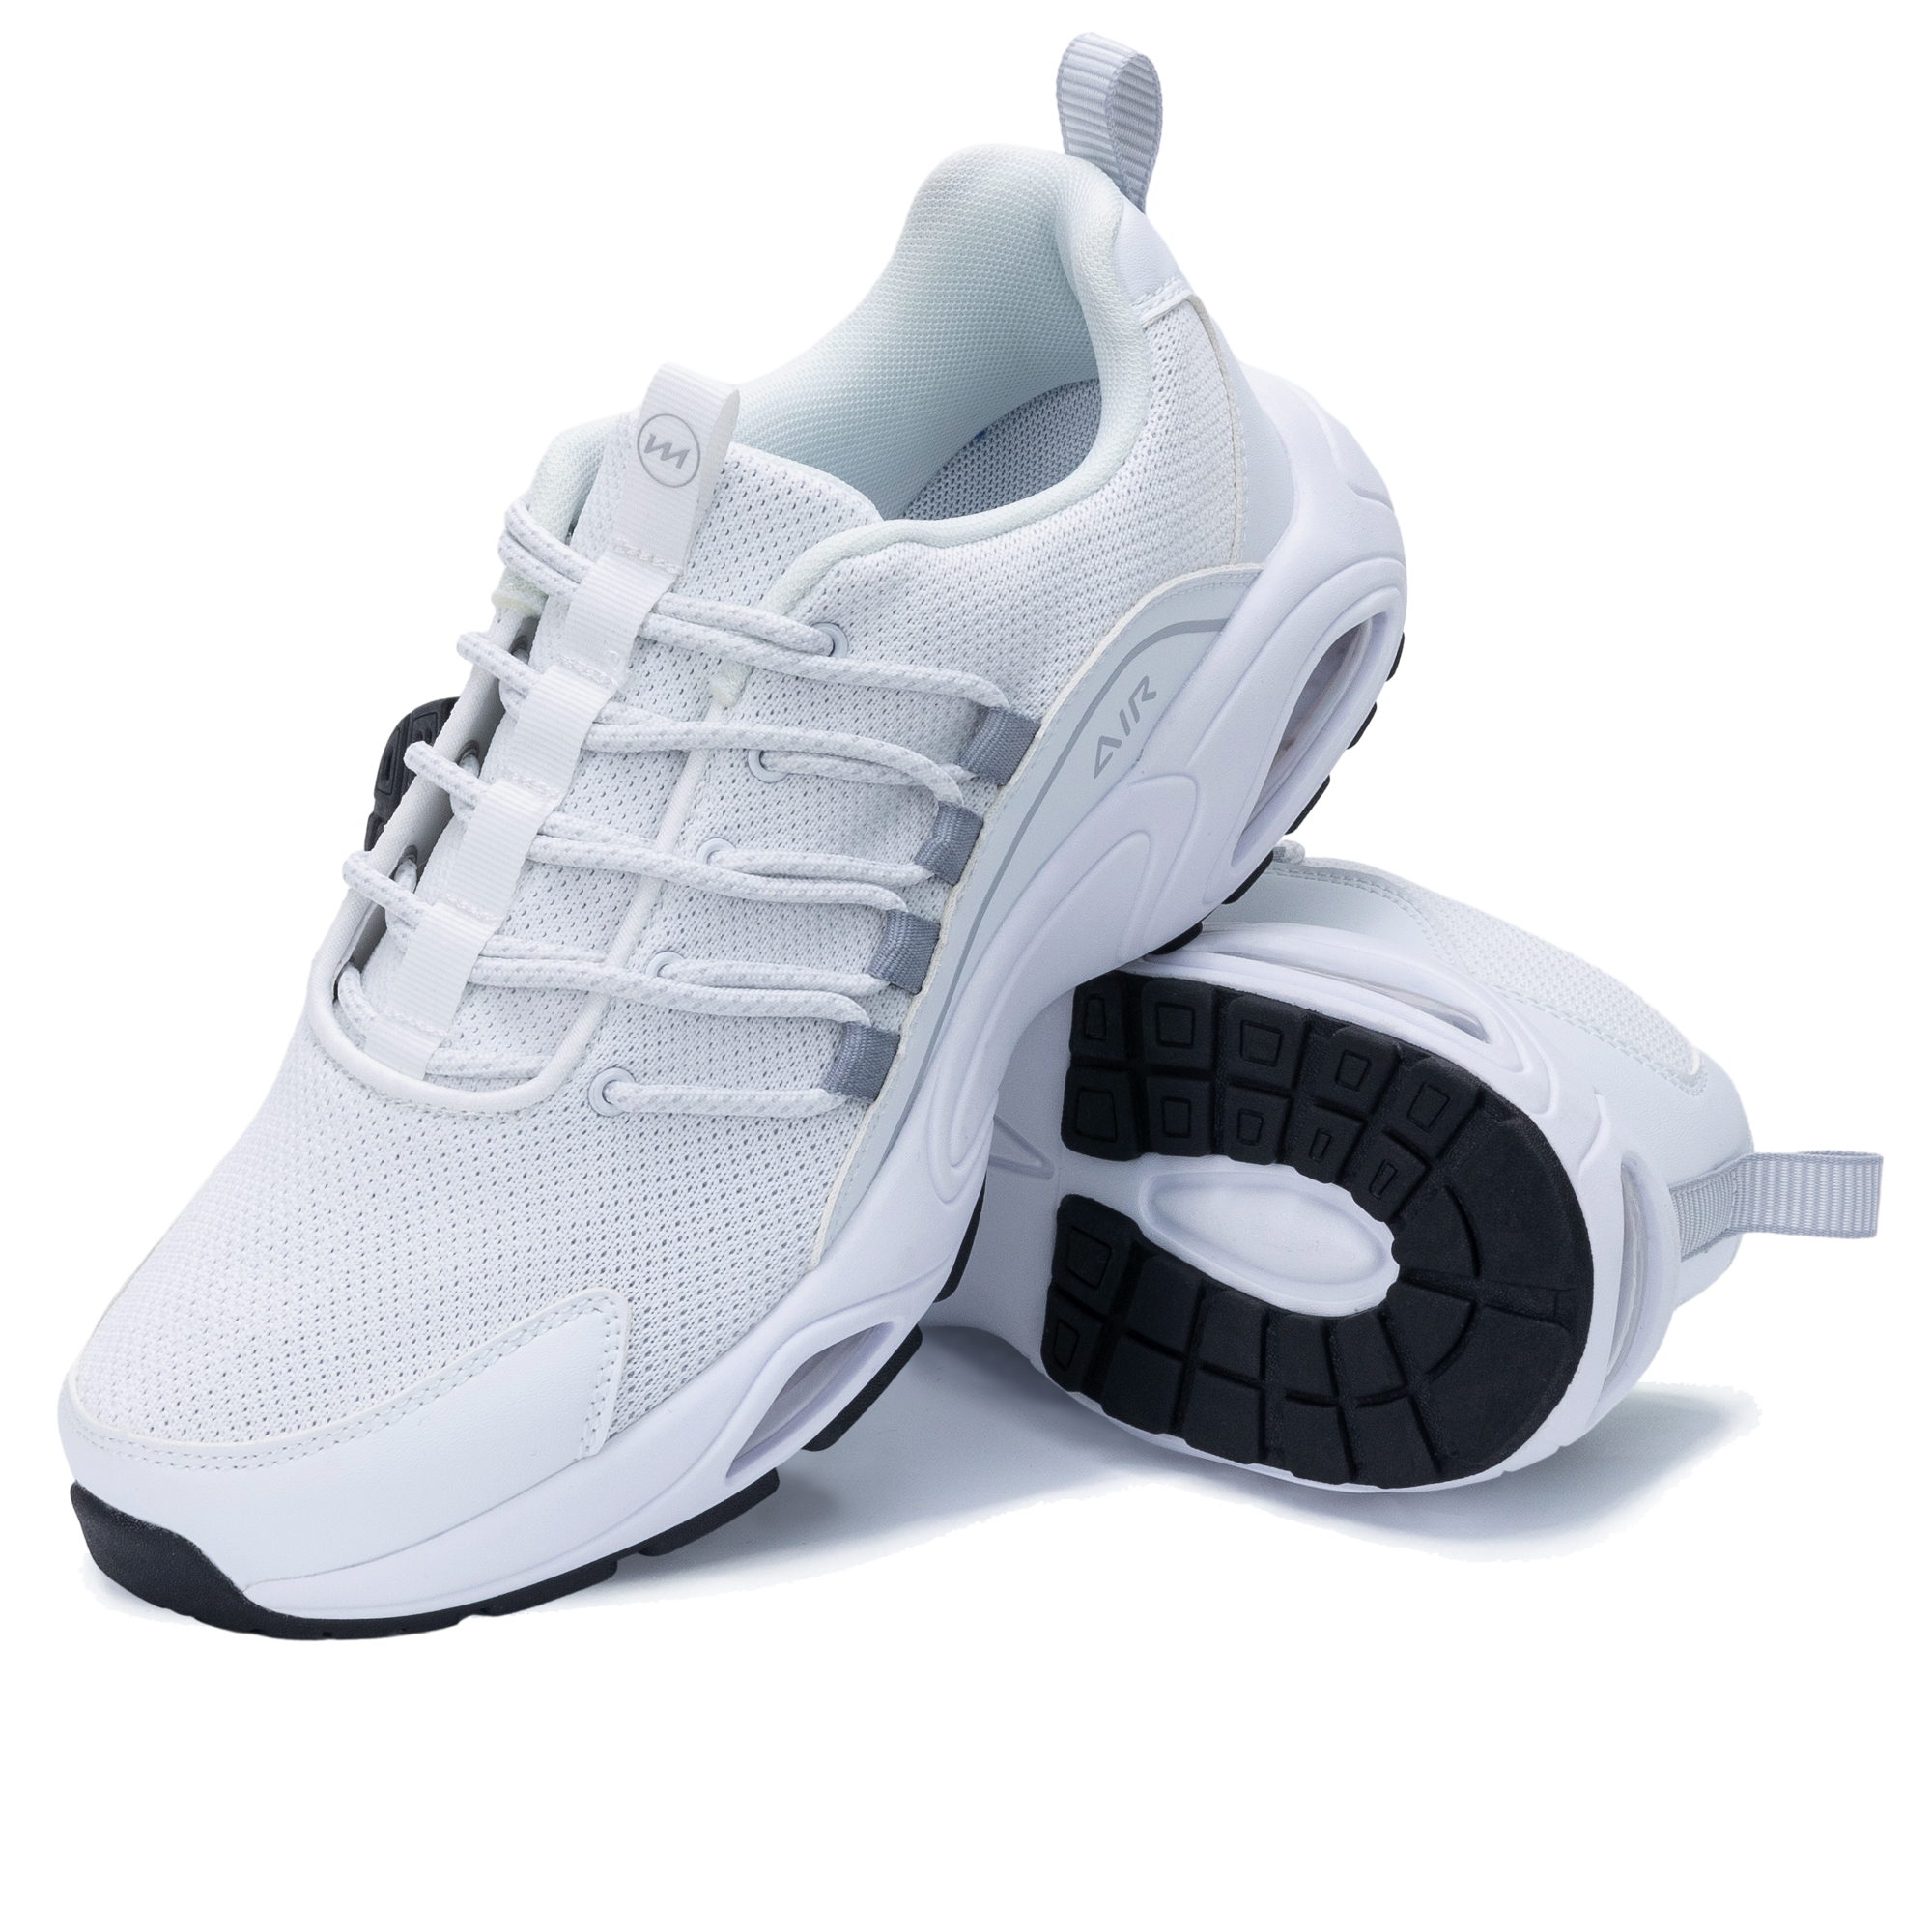 Chaussures décontractées pour hommes Breason Runnning Trainers Sneakers Shoe de sport de tennis athlétique léger pour gymnase Walking Jogging Fitness Workout